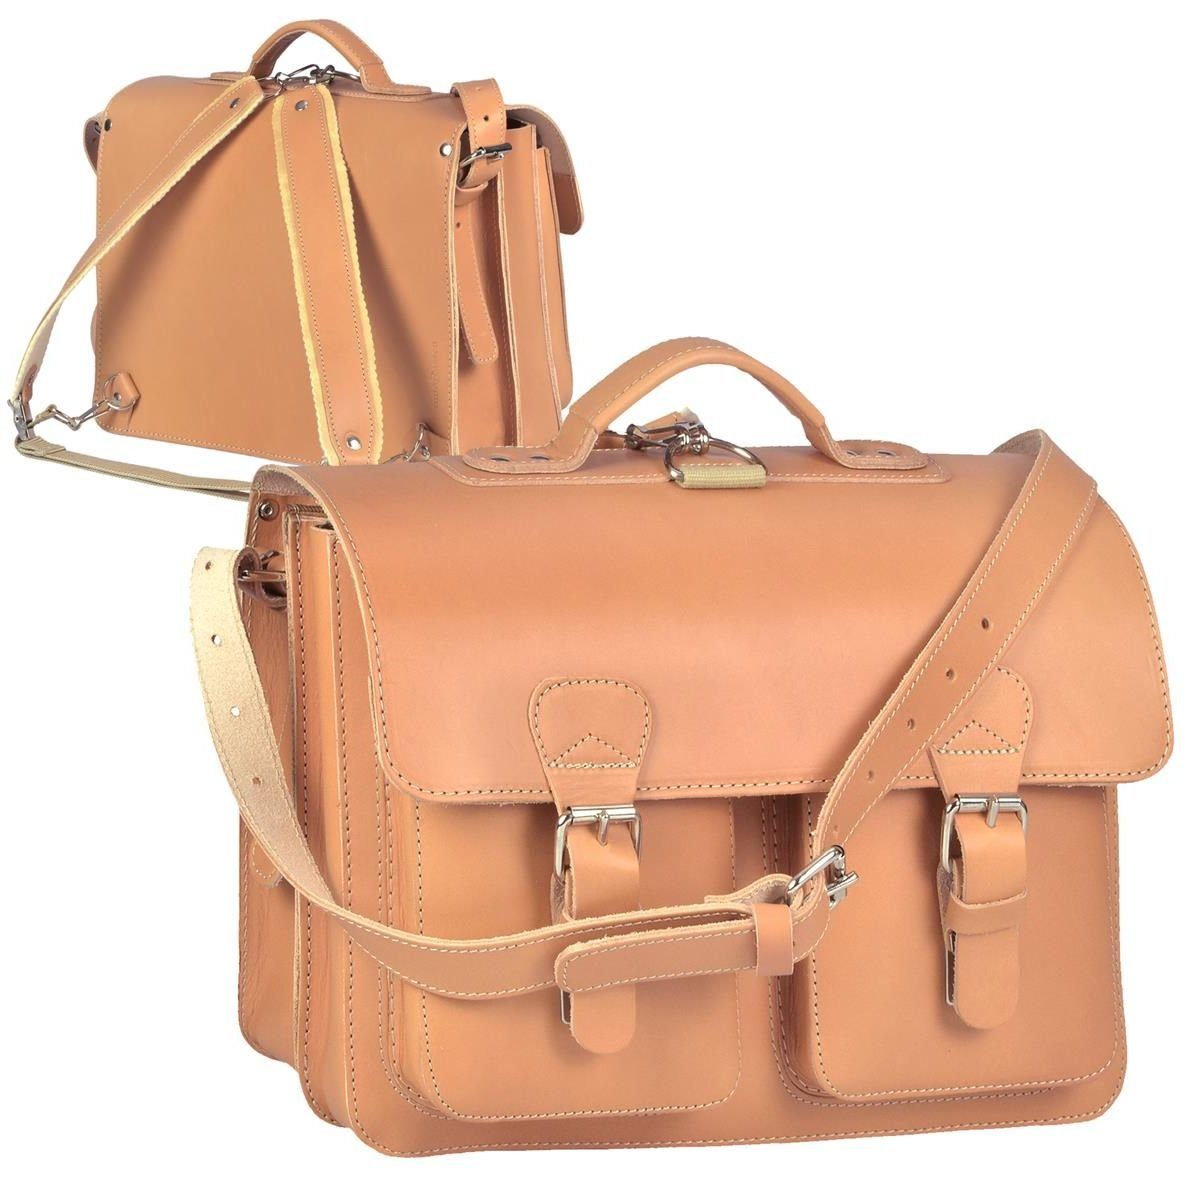 Ruitertassen Aktentasche Classic Satchel, 38 cm Lehrertasche mit 2 Fächern, auch als Rucksack zu tragen, Leder natur